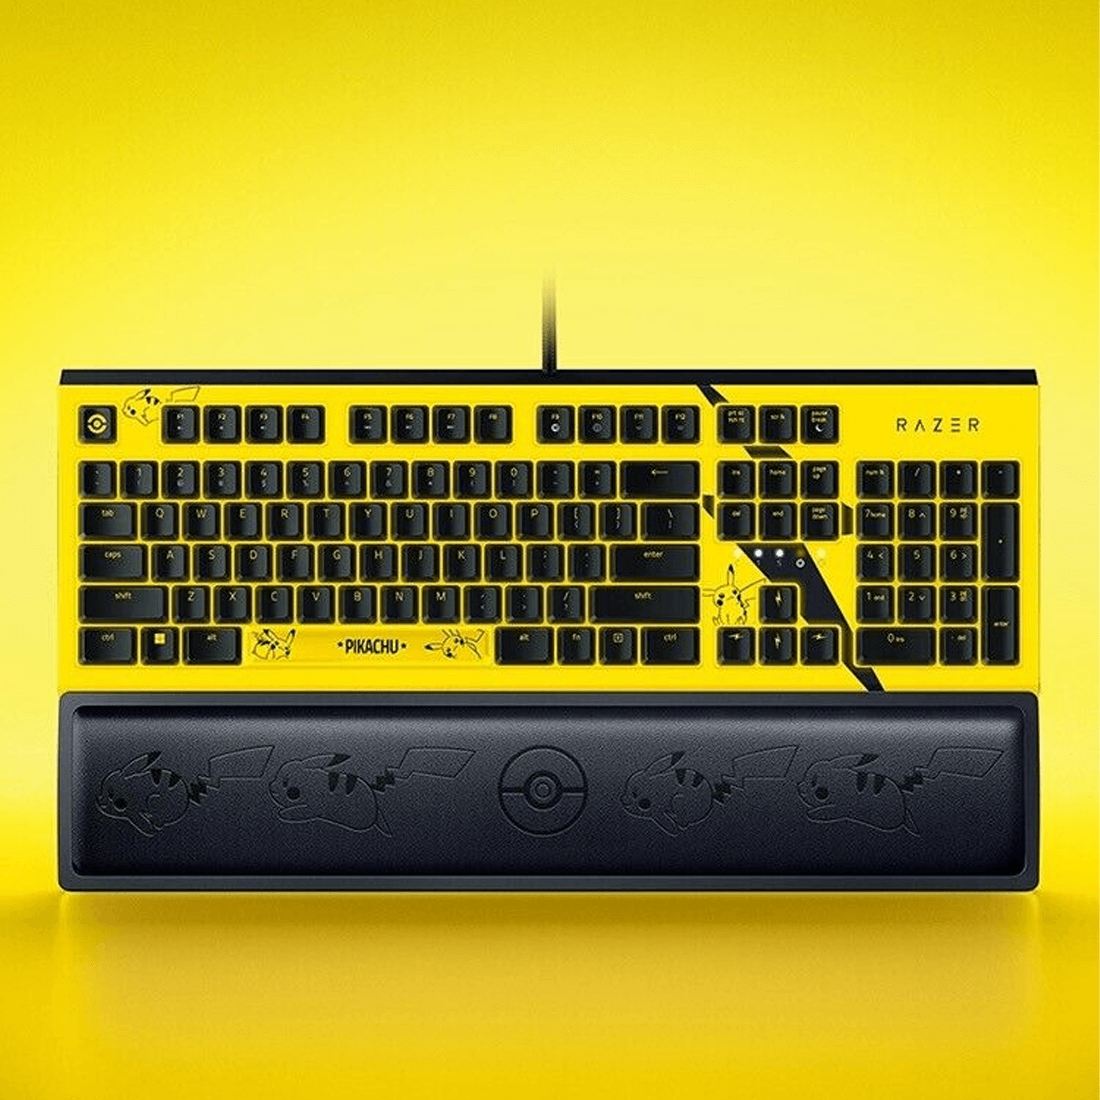 Razer x Pokémon Pikachu Wrist Rest for Keyboard 104 Keys - أكسسوار لوحة مفاتيح - Store 974 | ستور ٩٧٤